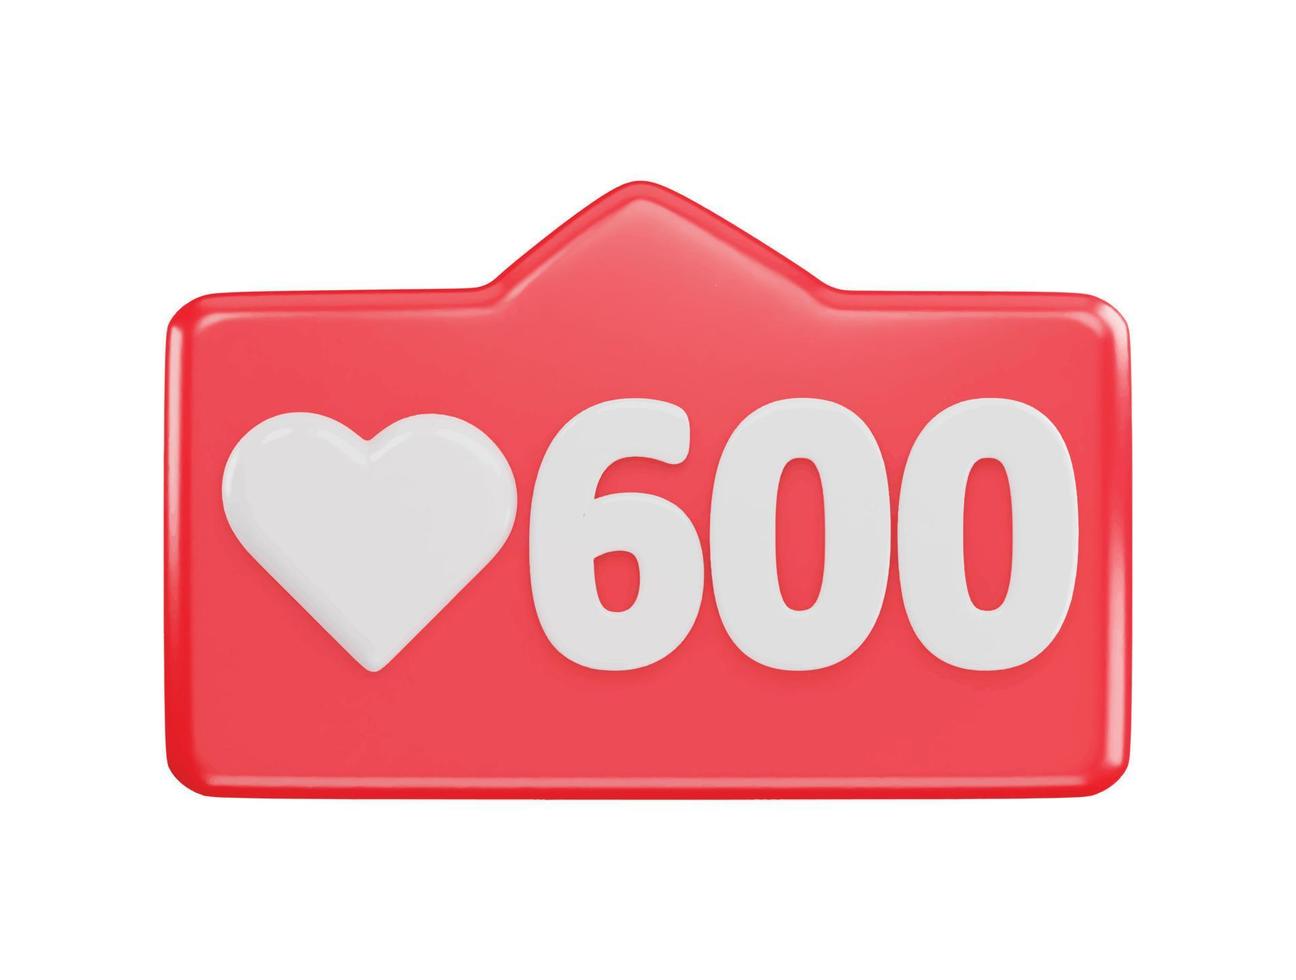 600 social media love react icon 3d rendering vector illustration